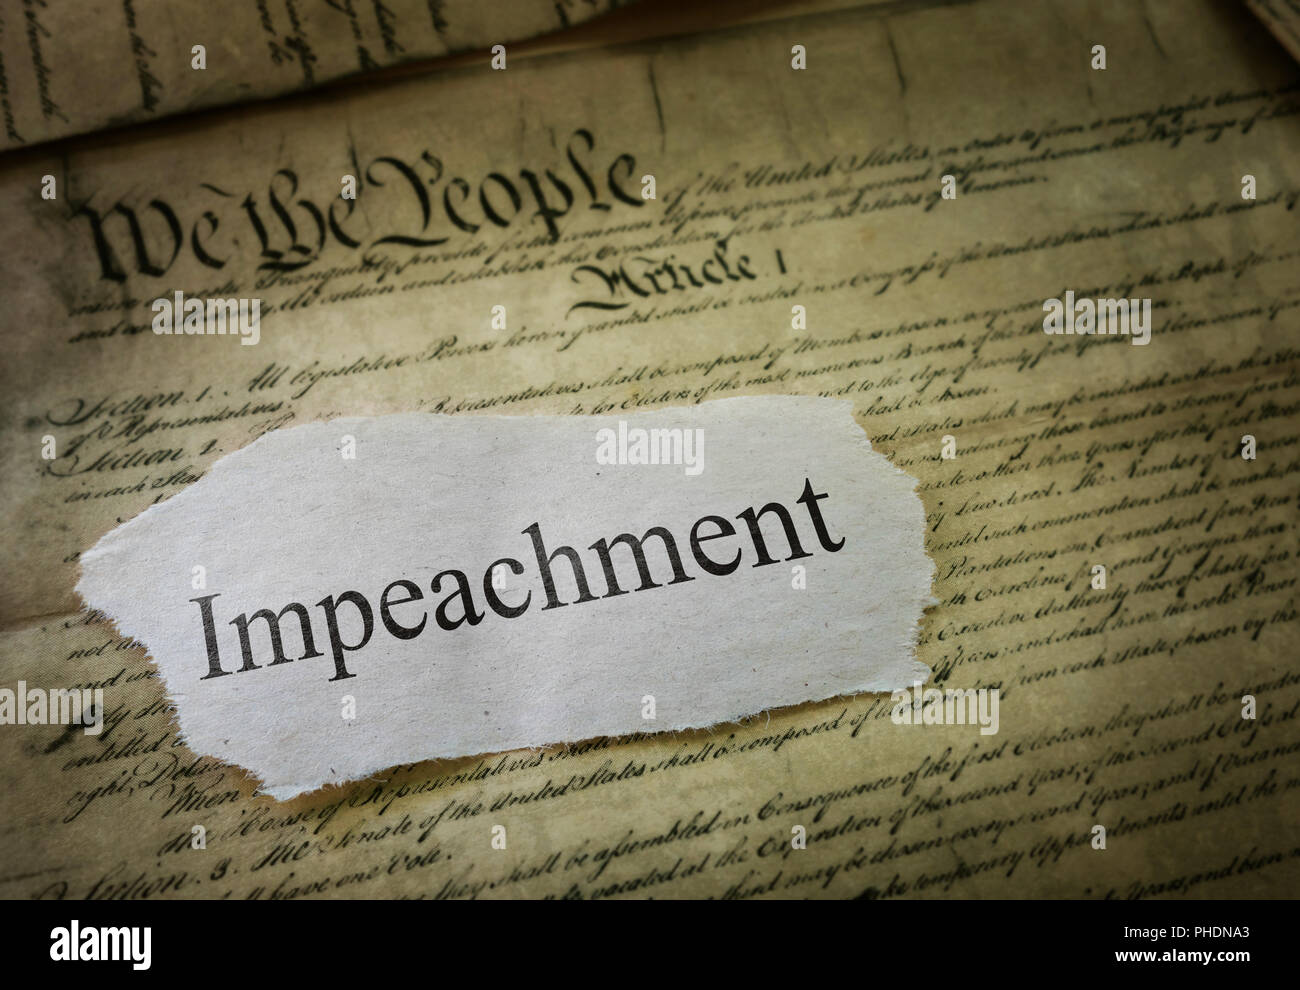 Impeachment news headline Stock Photo